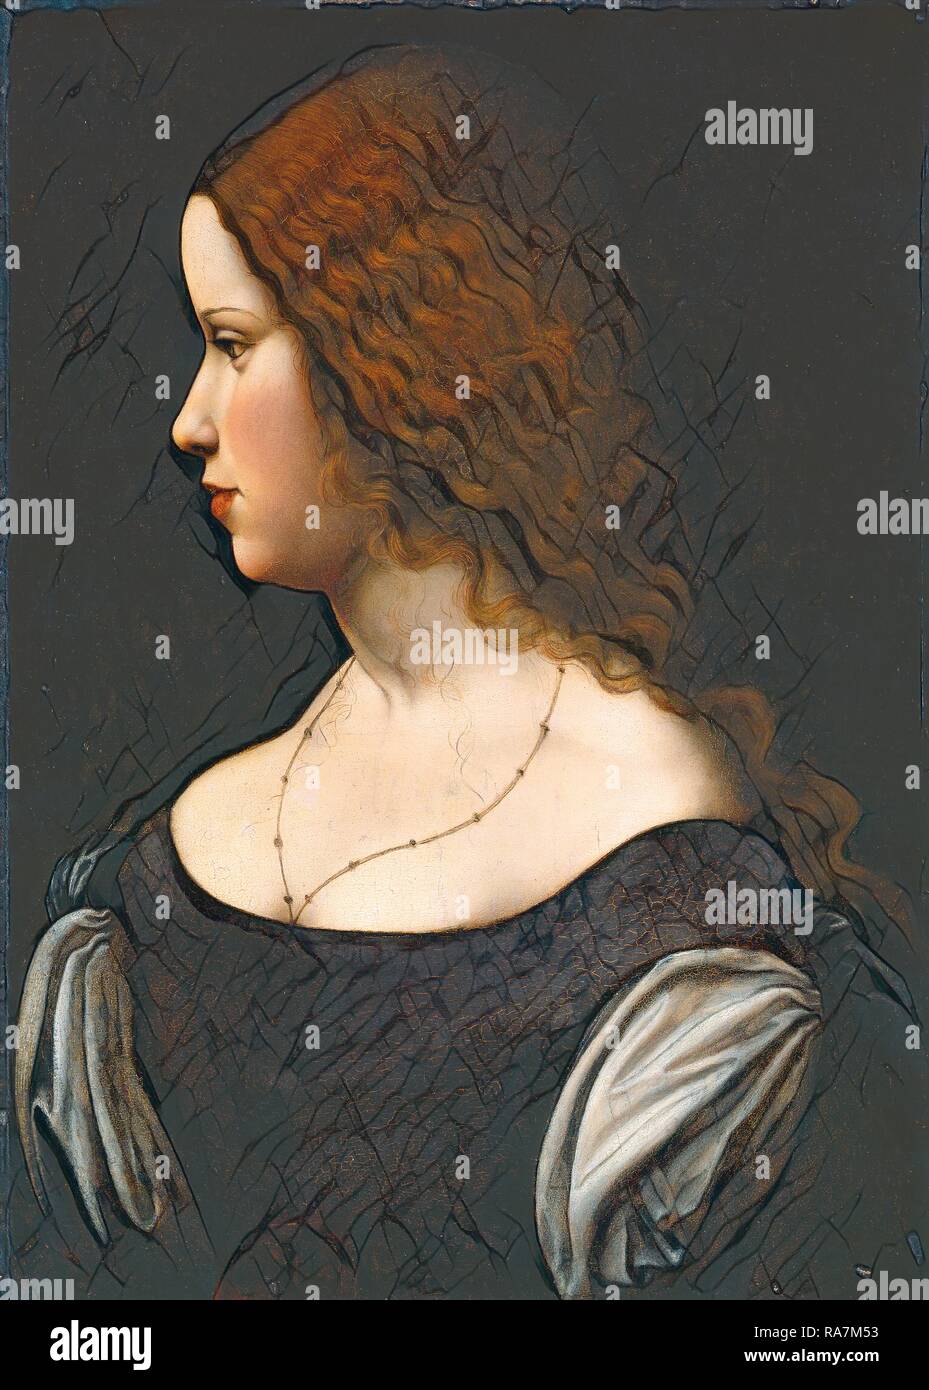 Disciple de Léonard de Vinci, Portrait d'une jeune dame, ch. 1500, huile sur panneau transférée à panneaux durs. Repensé Banque D'Images